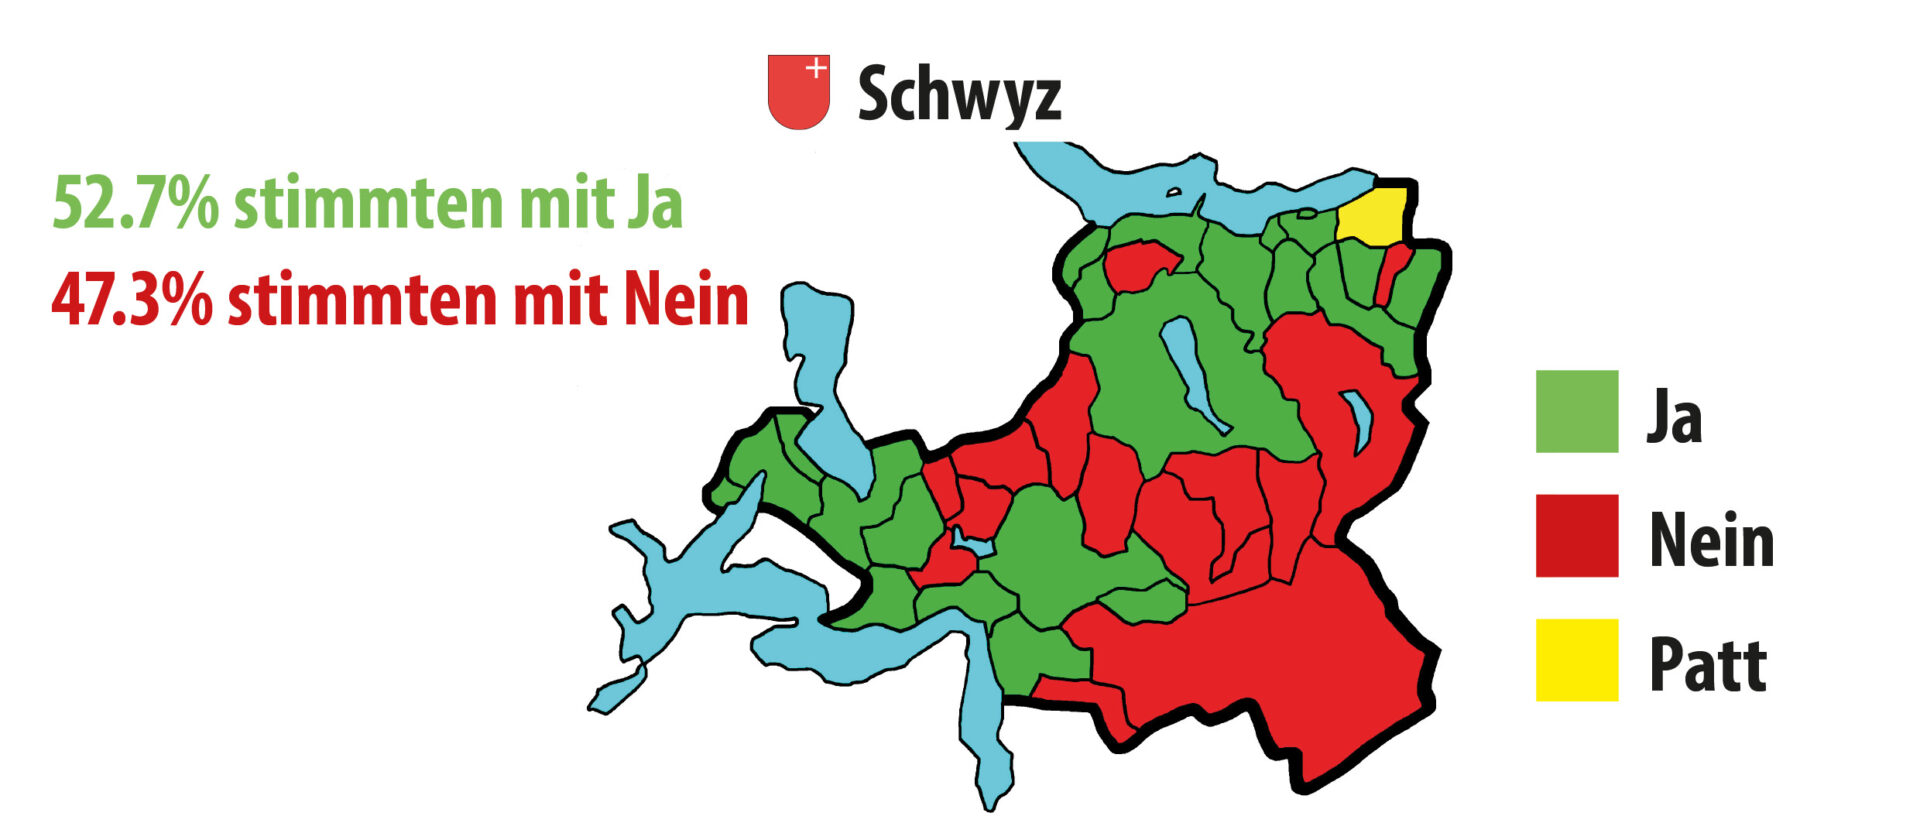 Die Schwyzer Katholiken sagen Ja zur Wahlreform: Künftig können auch Katholiken mit C-Bewilligung an kirchlichen Wahlen teilnehmen.